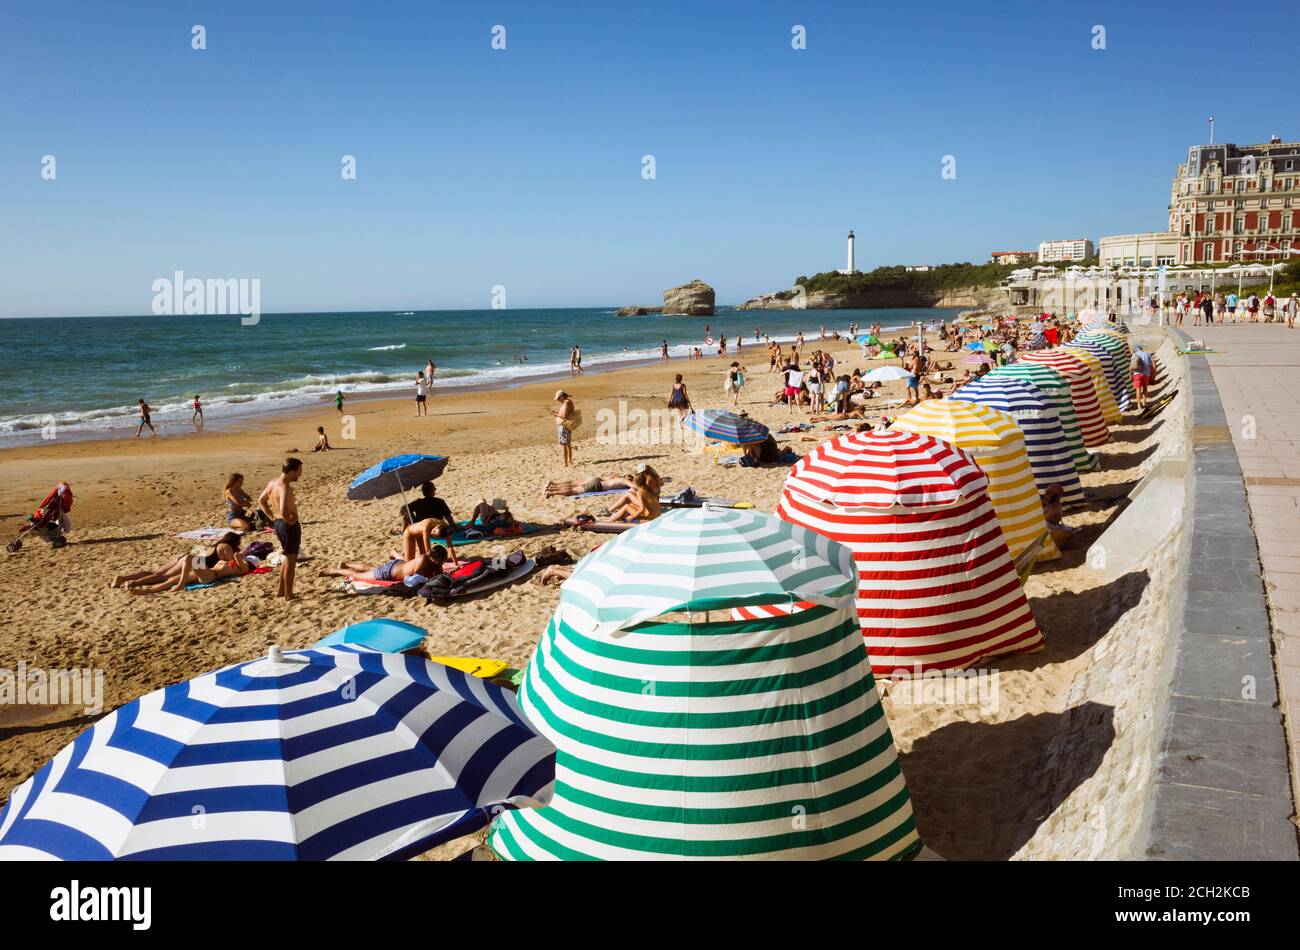 Biarritz, pays basque français, France - 19 juillet 2019 : la plage se trouve parmi les tons de soleil colorés de la Grande Plage, la plus grande plage de la ville. Hôtel d Banque D'Images